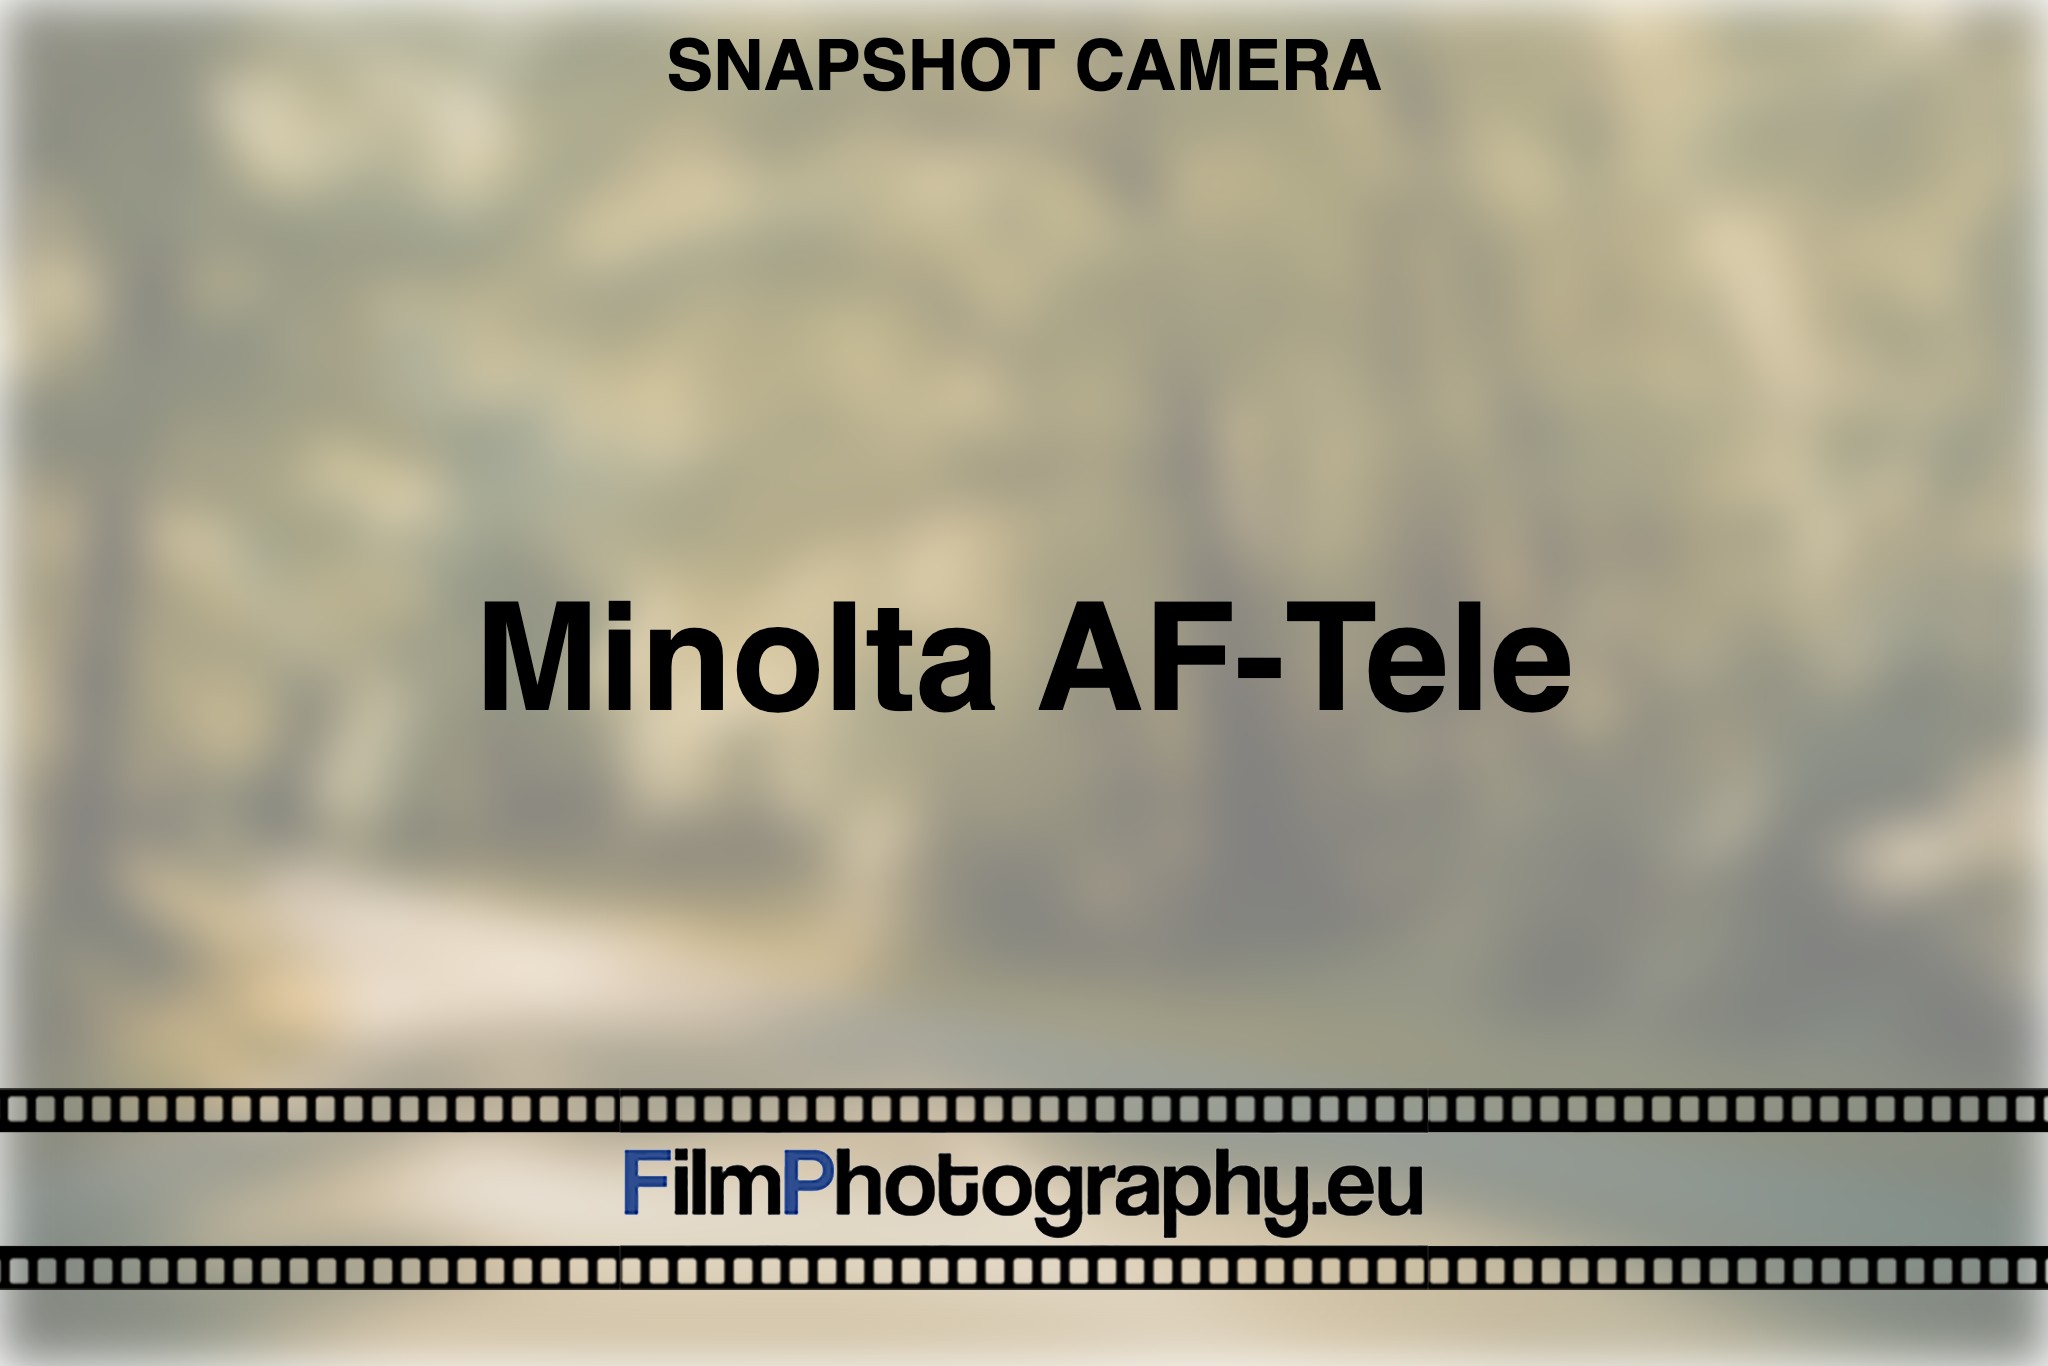 minolta-af-tele-snapshot-camera-bnv